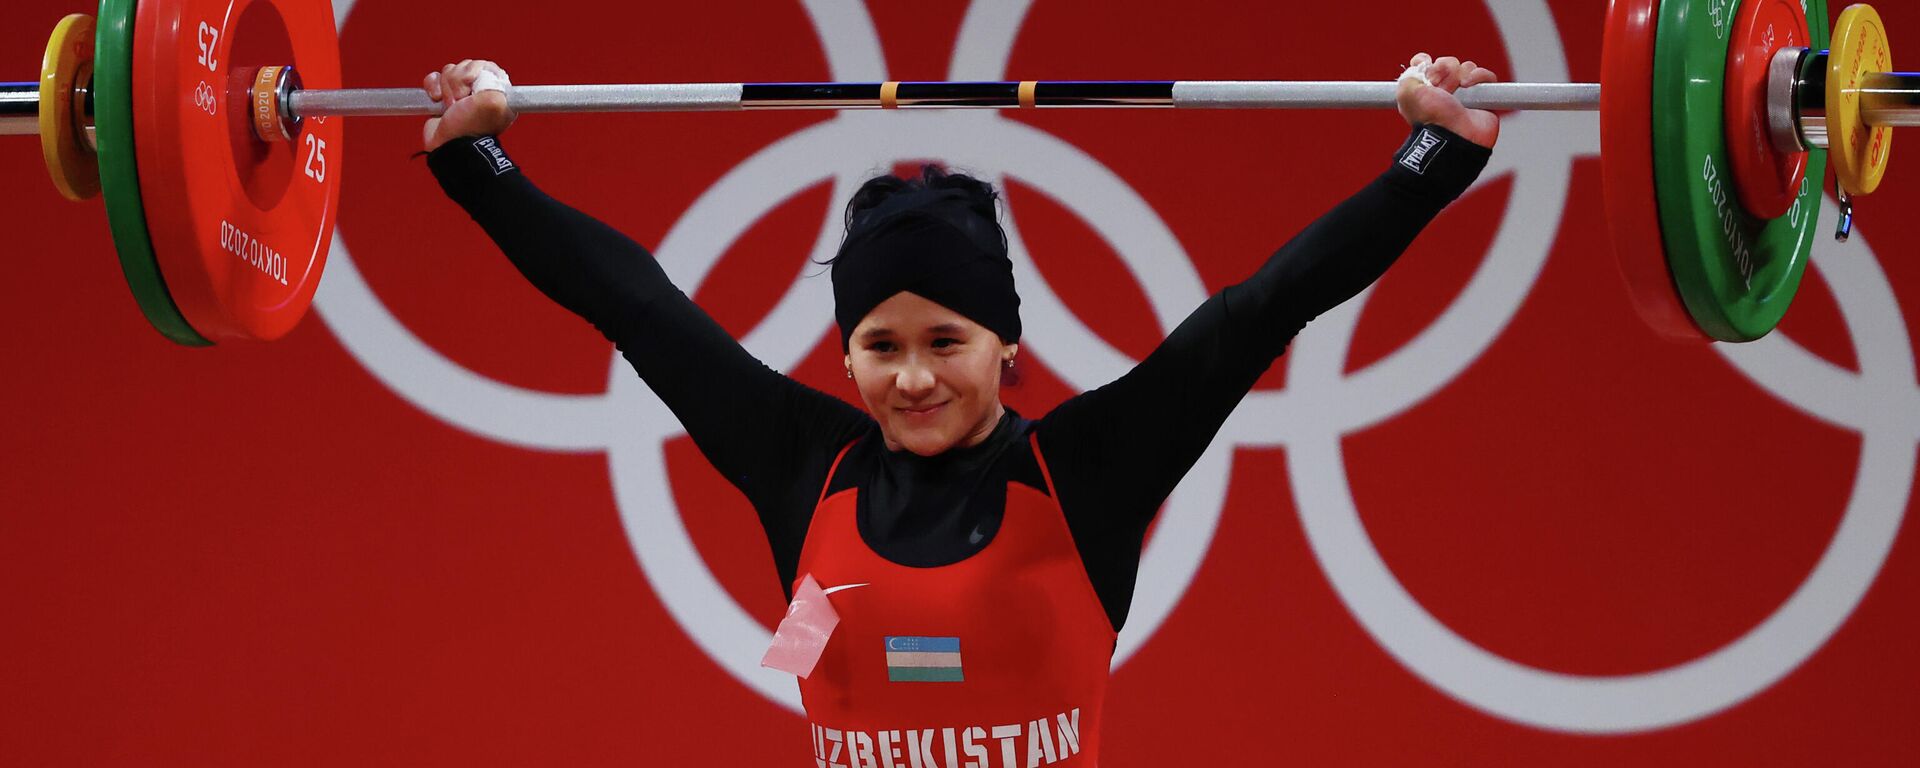 Узбекская штангистка Муаттар Набиева подняла 98 кг и установила олимпийский рекорд. - Sputnik Ўзбекистон, 1920, 26.07.2021